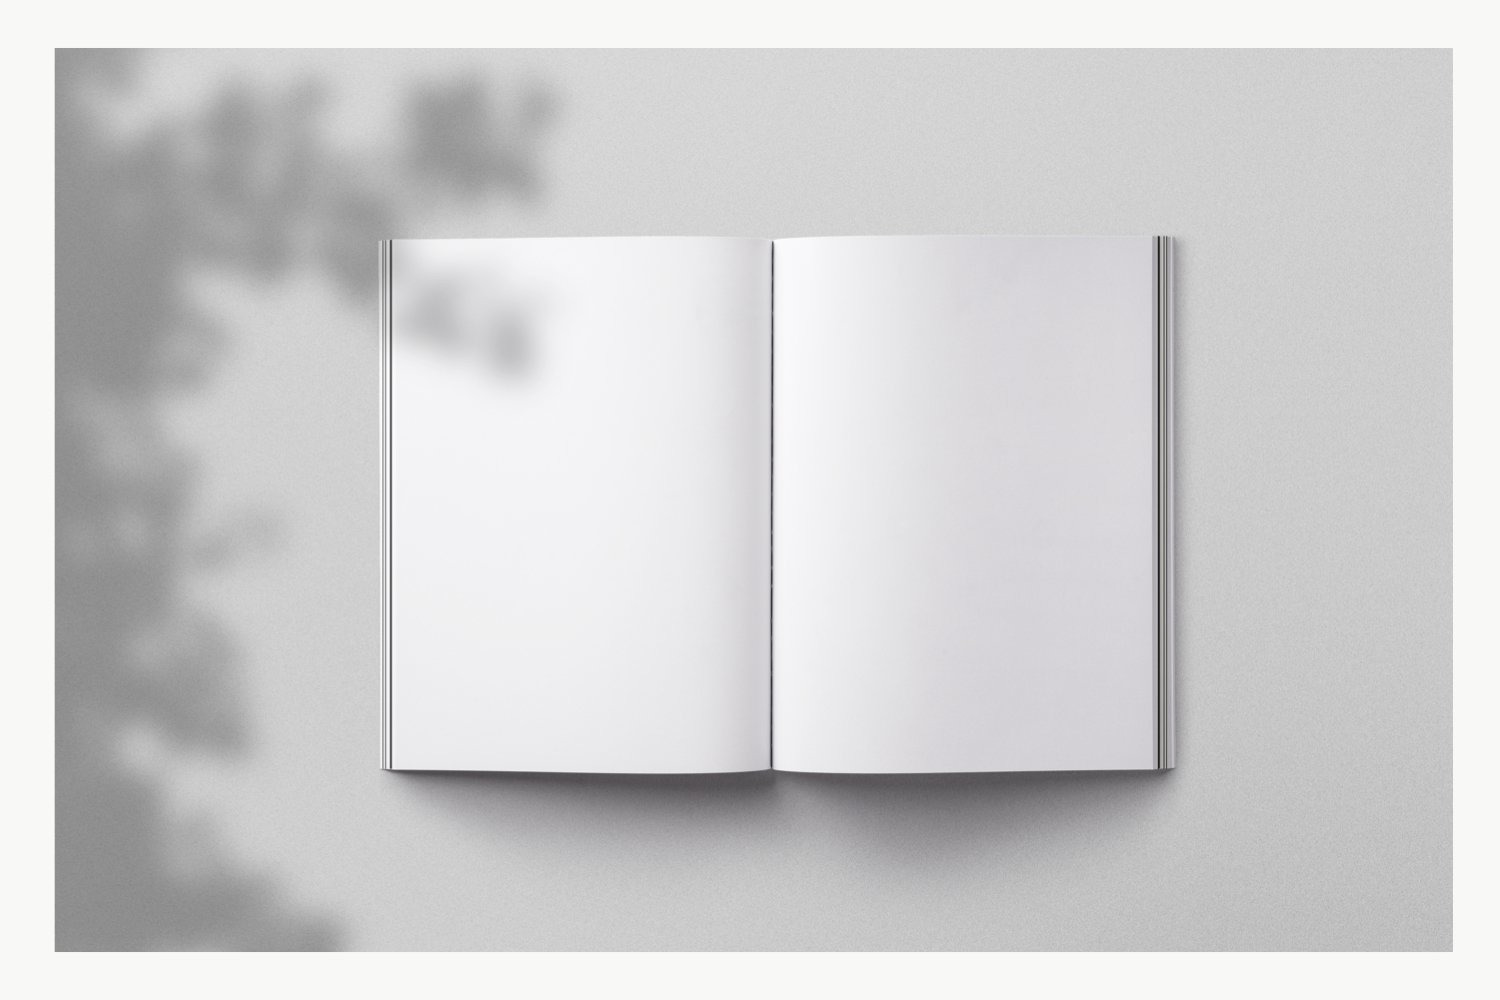 高品质自然光影多种背景纹理杂志书籍场景设计提案样机模板 Ma